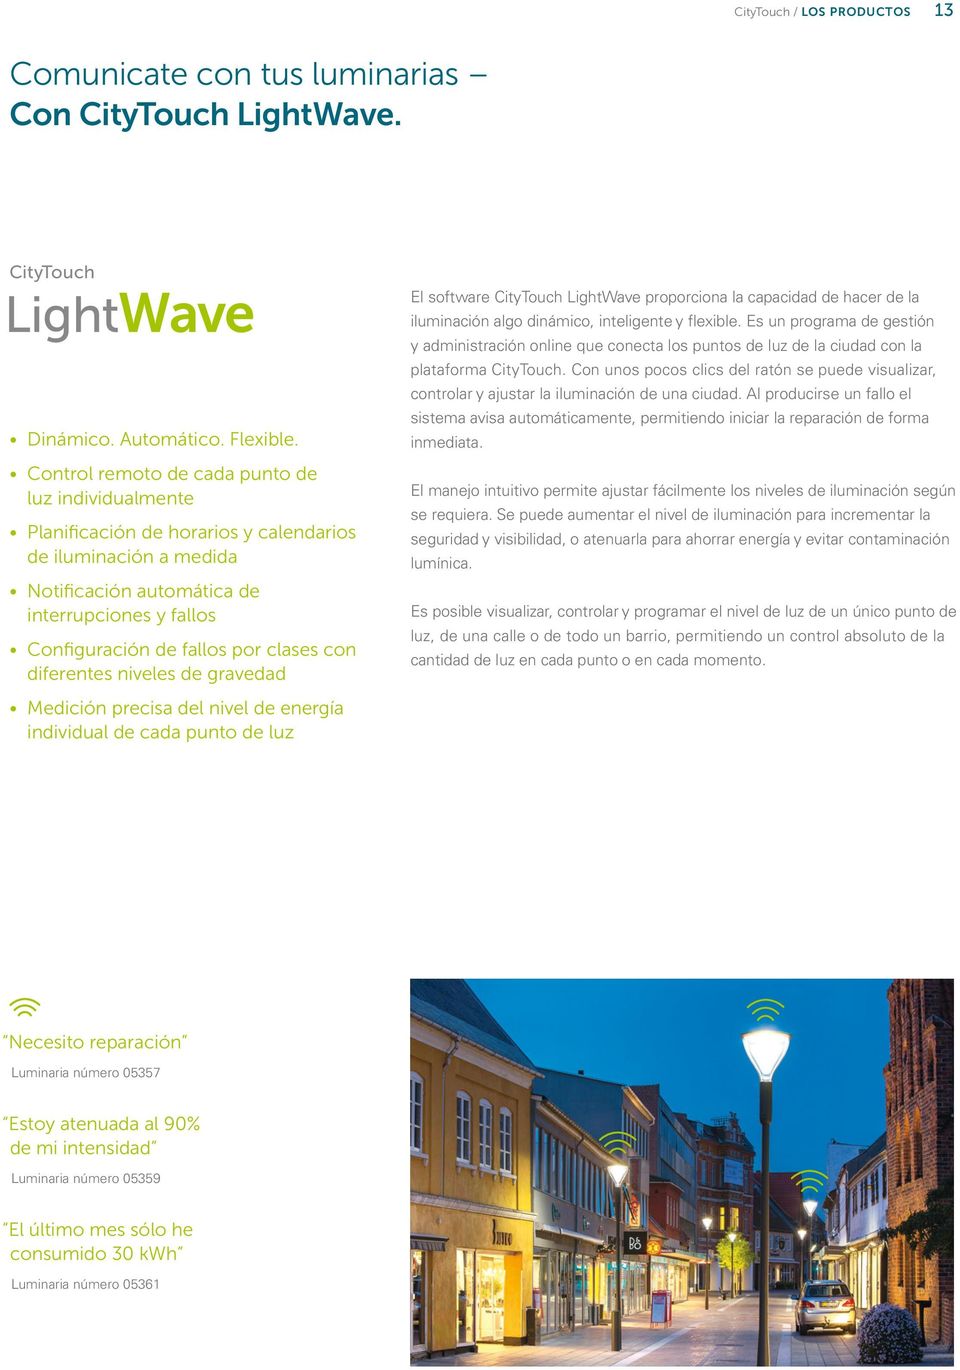 clases con diferentes niveles de gravedad Medición precisa del nivel de energía individual de cada punto de luz El software CityTouch LightWave proporciona la capacidad de hacer de la iluminación